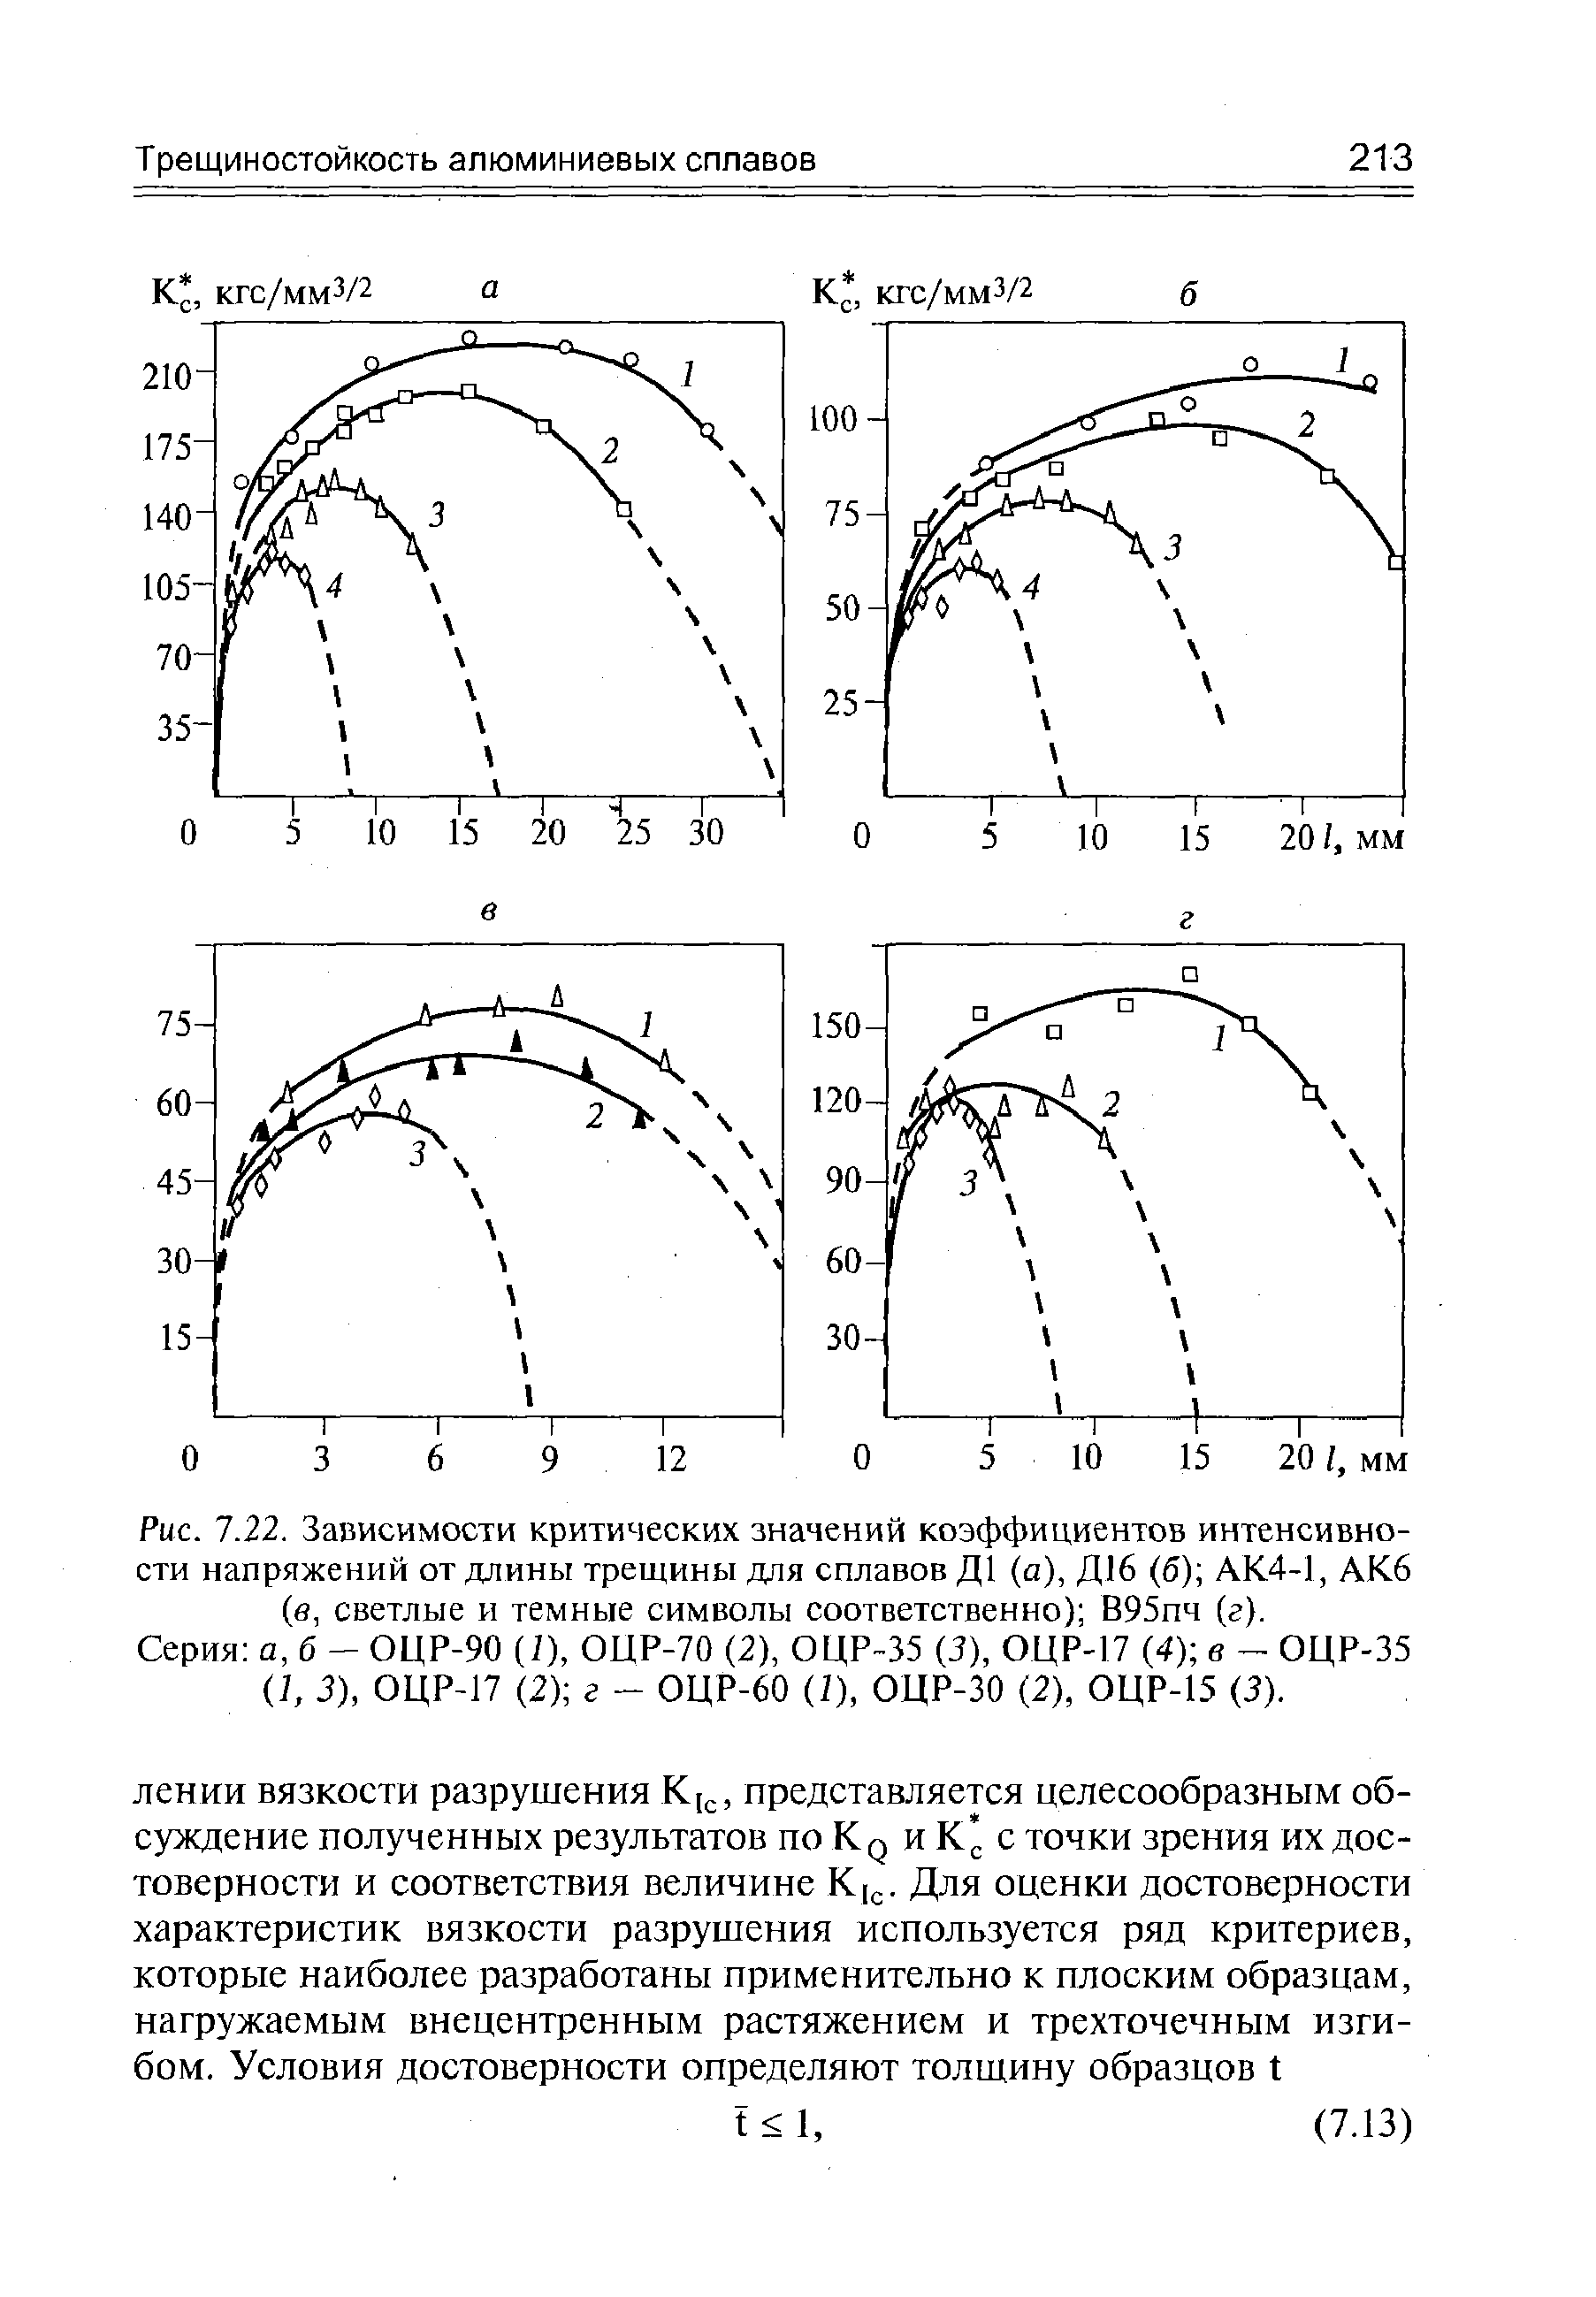 Рис. 7.22. Зависимости <a href="/info/397540">критических значений коэффициентов интенсивности напряжений</a> от <a href="/info/223209">длины трещины</a> для сплавов Д1 (а), Д16 (б) АК4-1, АК6 (б, светлые и темные символы соответственно) В95пч (г).
